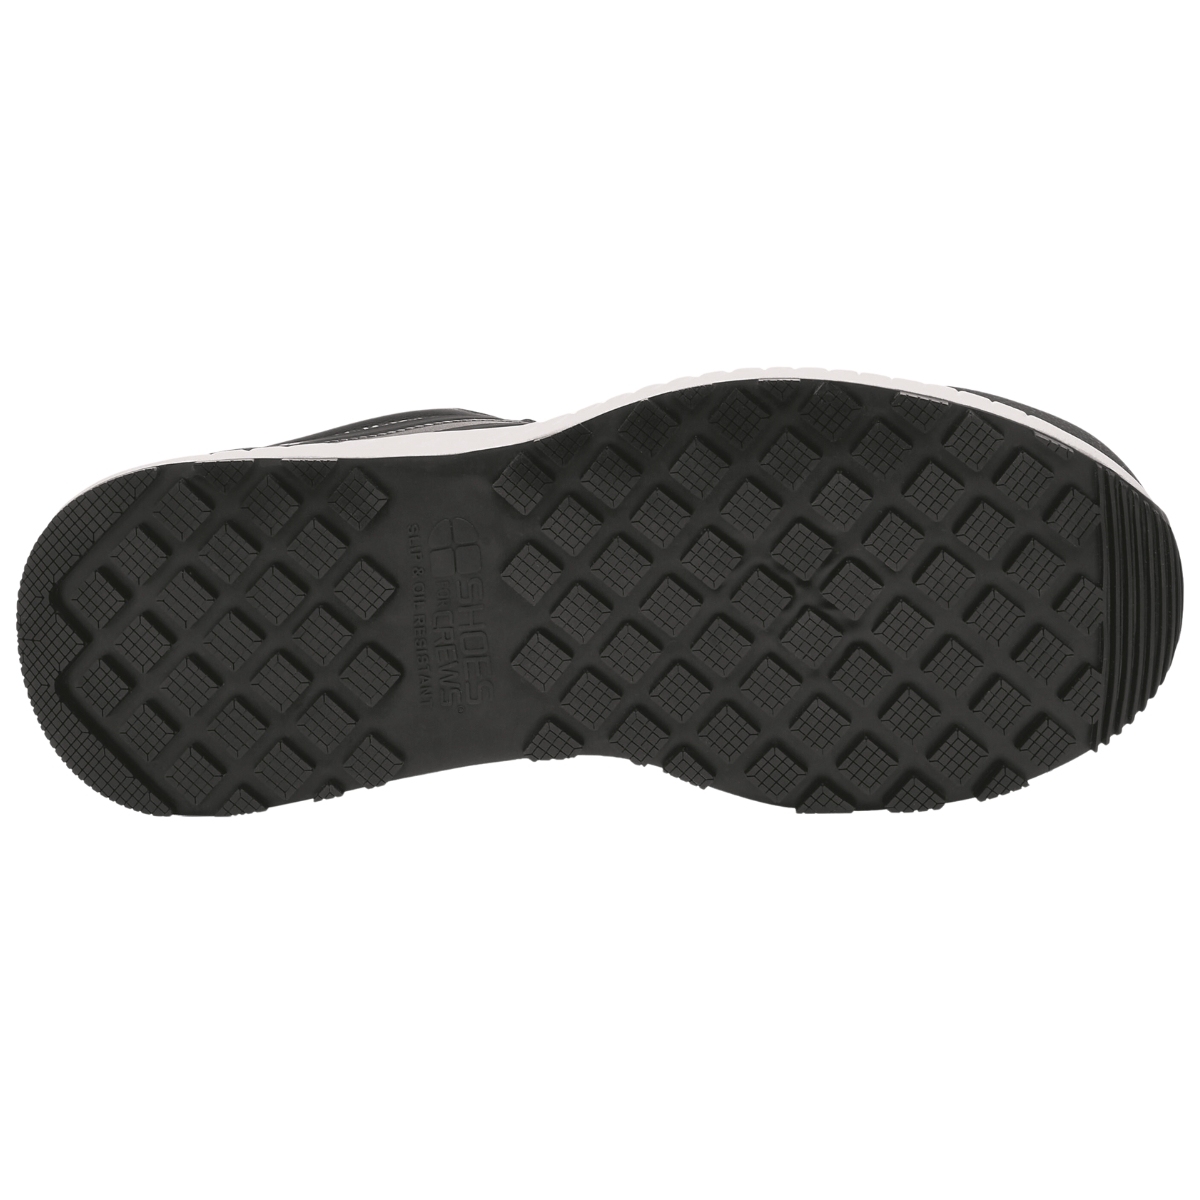 Zapato deportivo negro con suela blanca de poliéster y microfibra